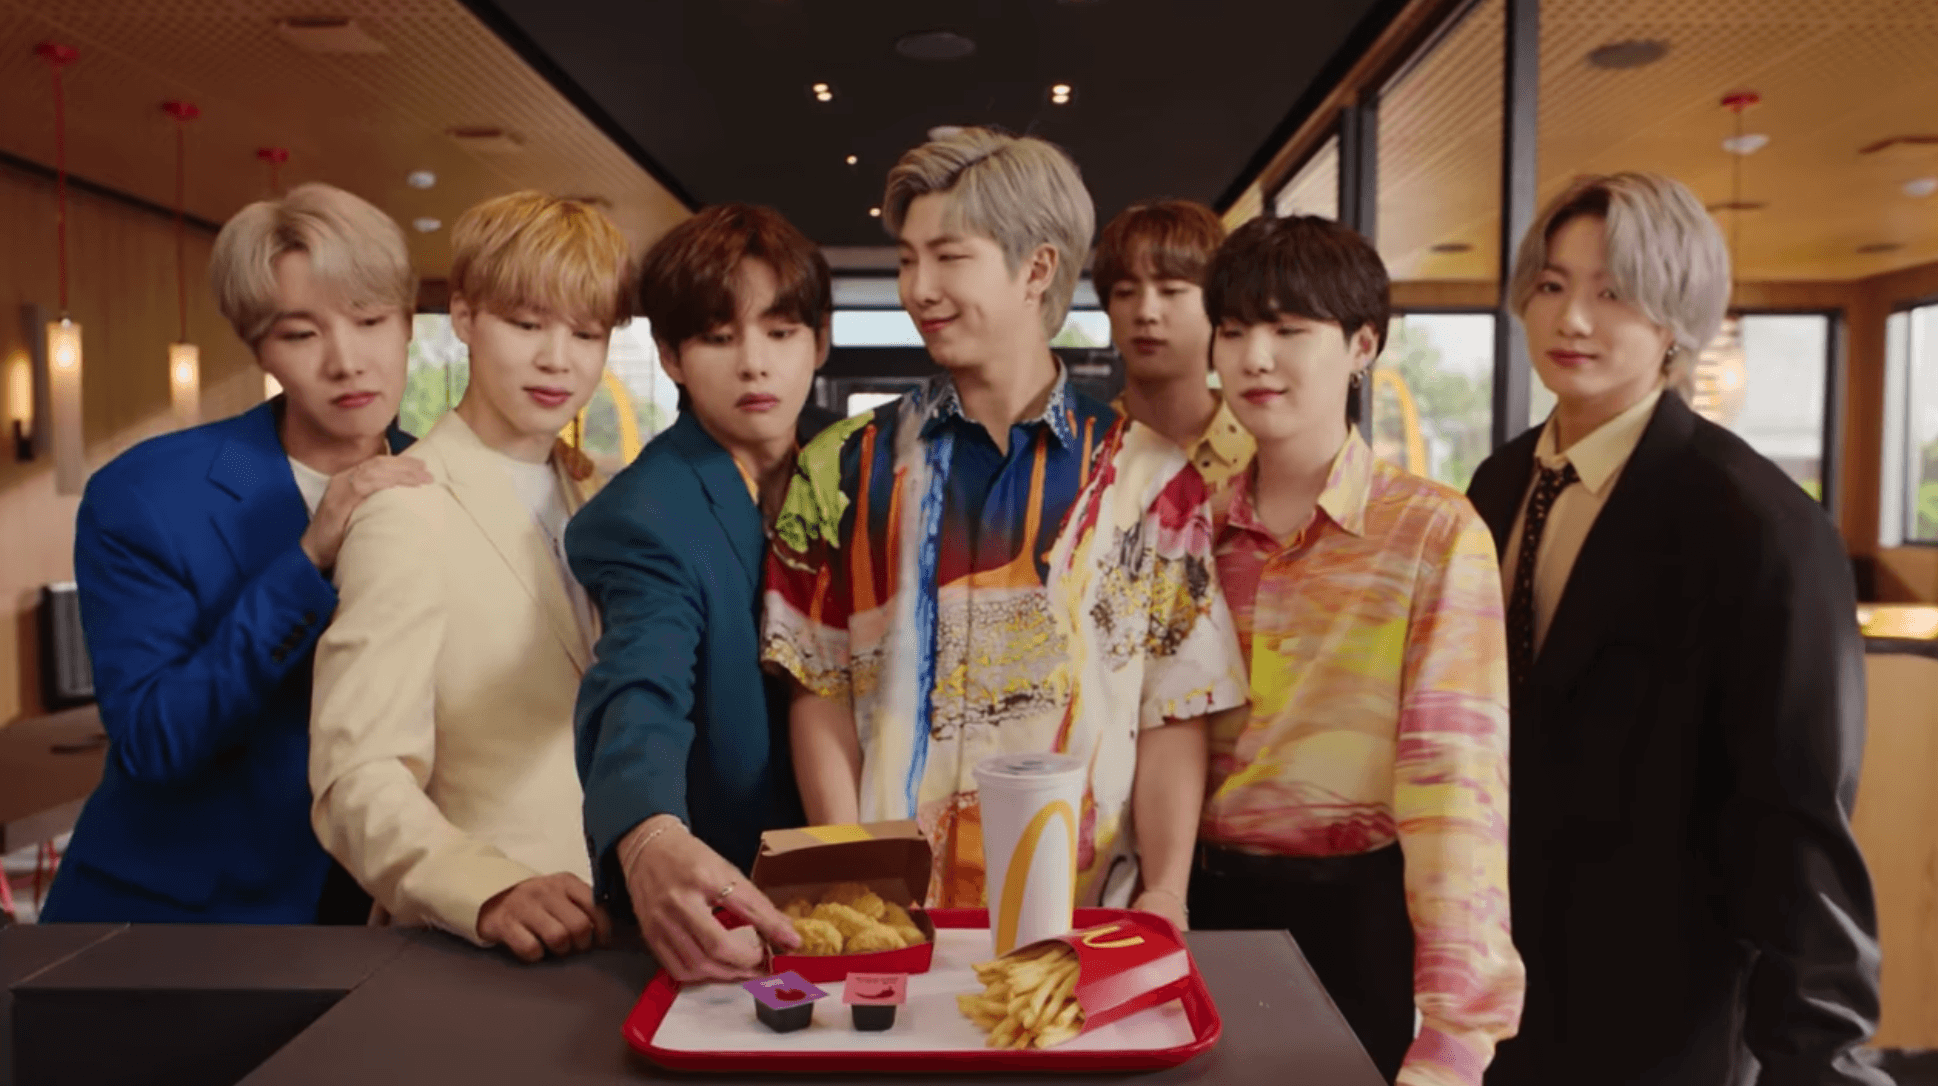 BTS recalls favorite McDonald’s memories in behind-the-scenes video